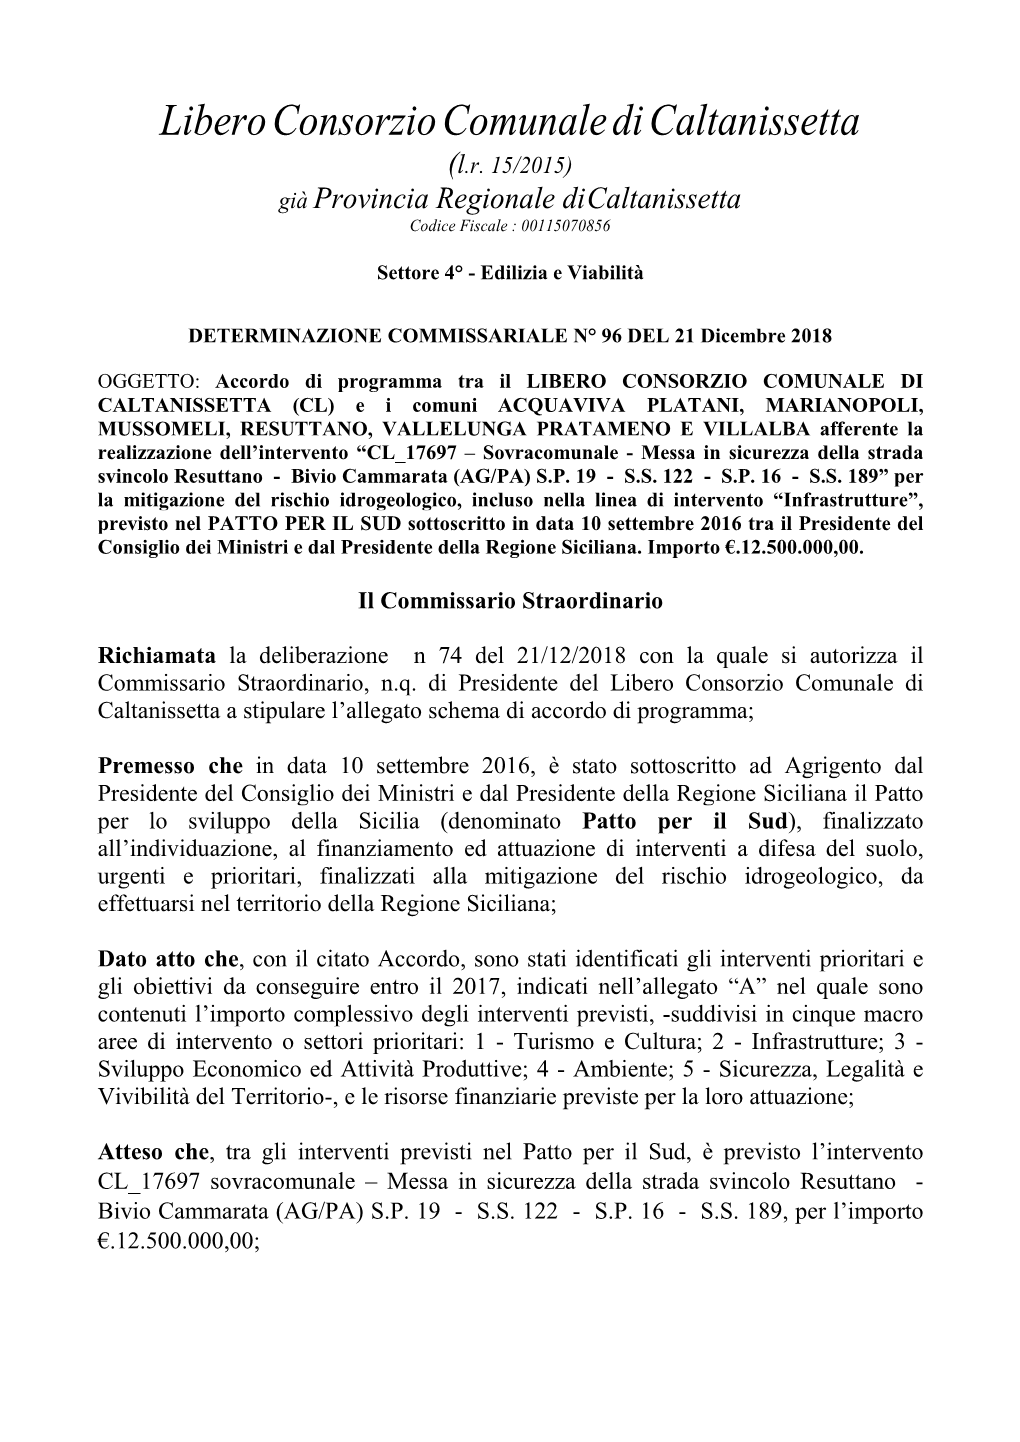 Libero Consorzio Comunale Di Caltanissetta (L.R